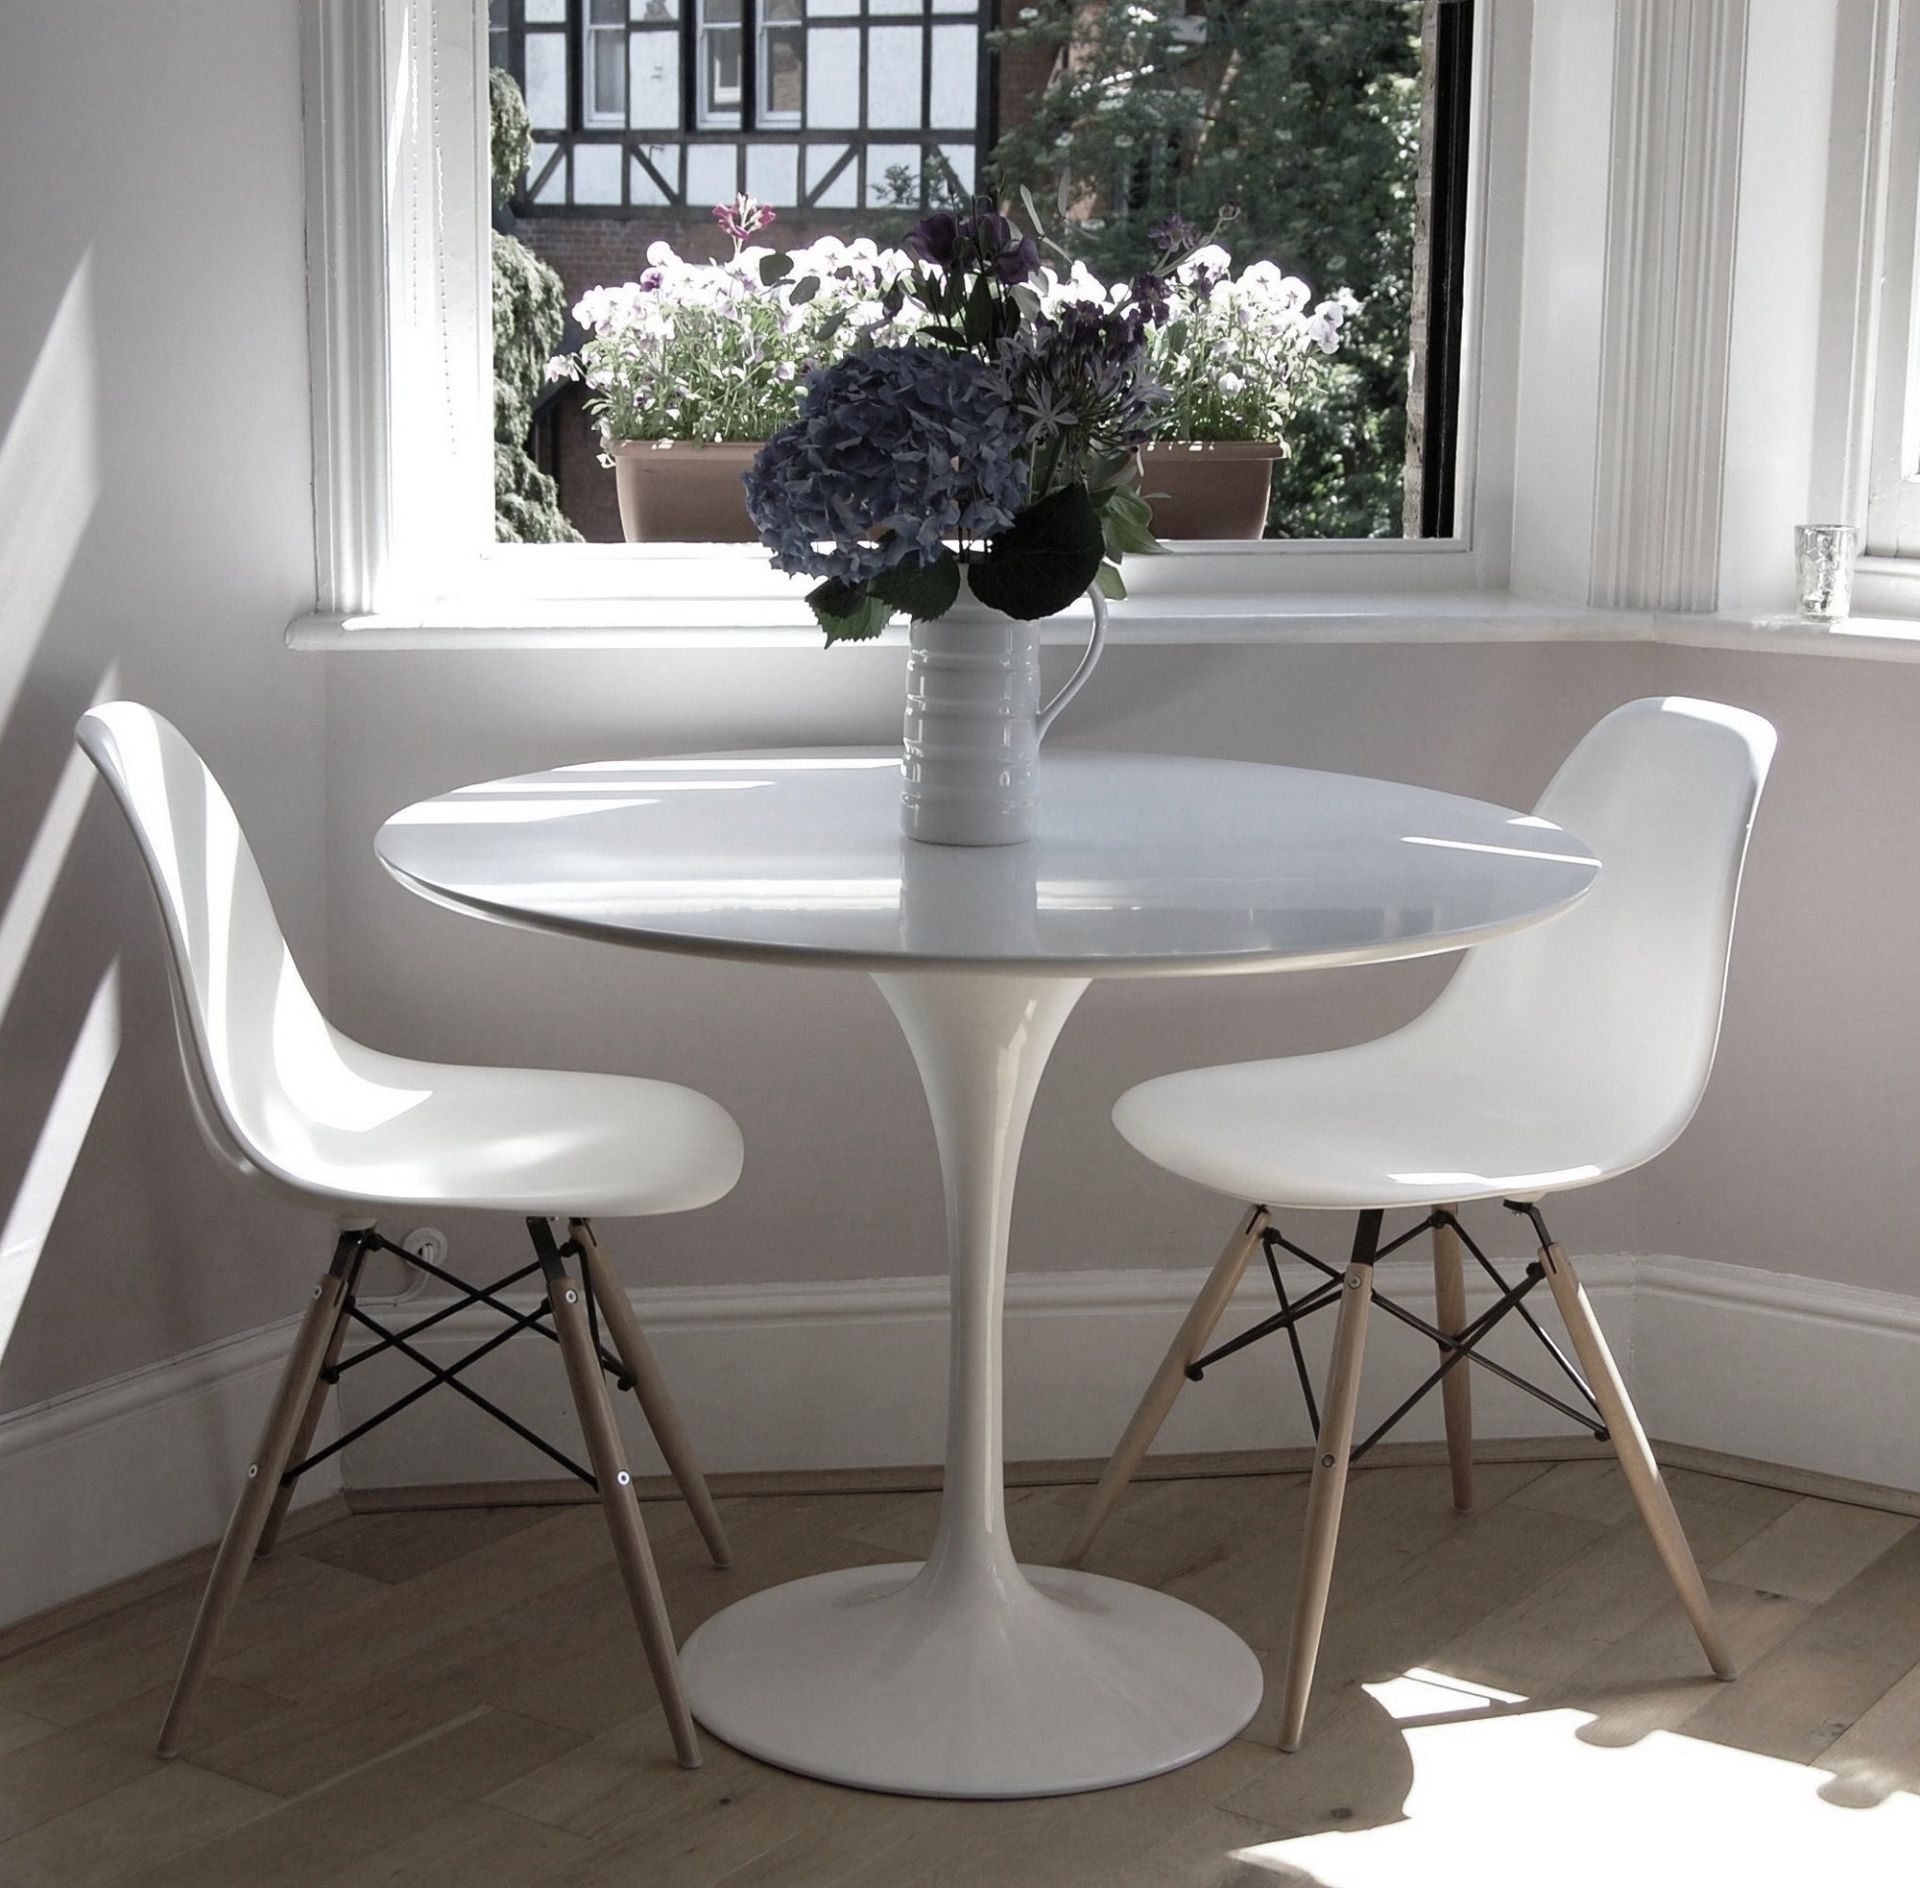 Tulip Eero Saarinen Inspired Table, 90cm - NEW - Image 2 of 9